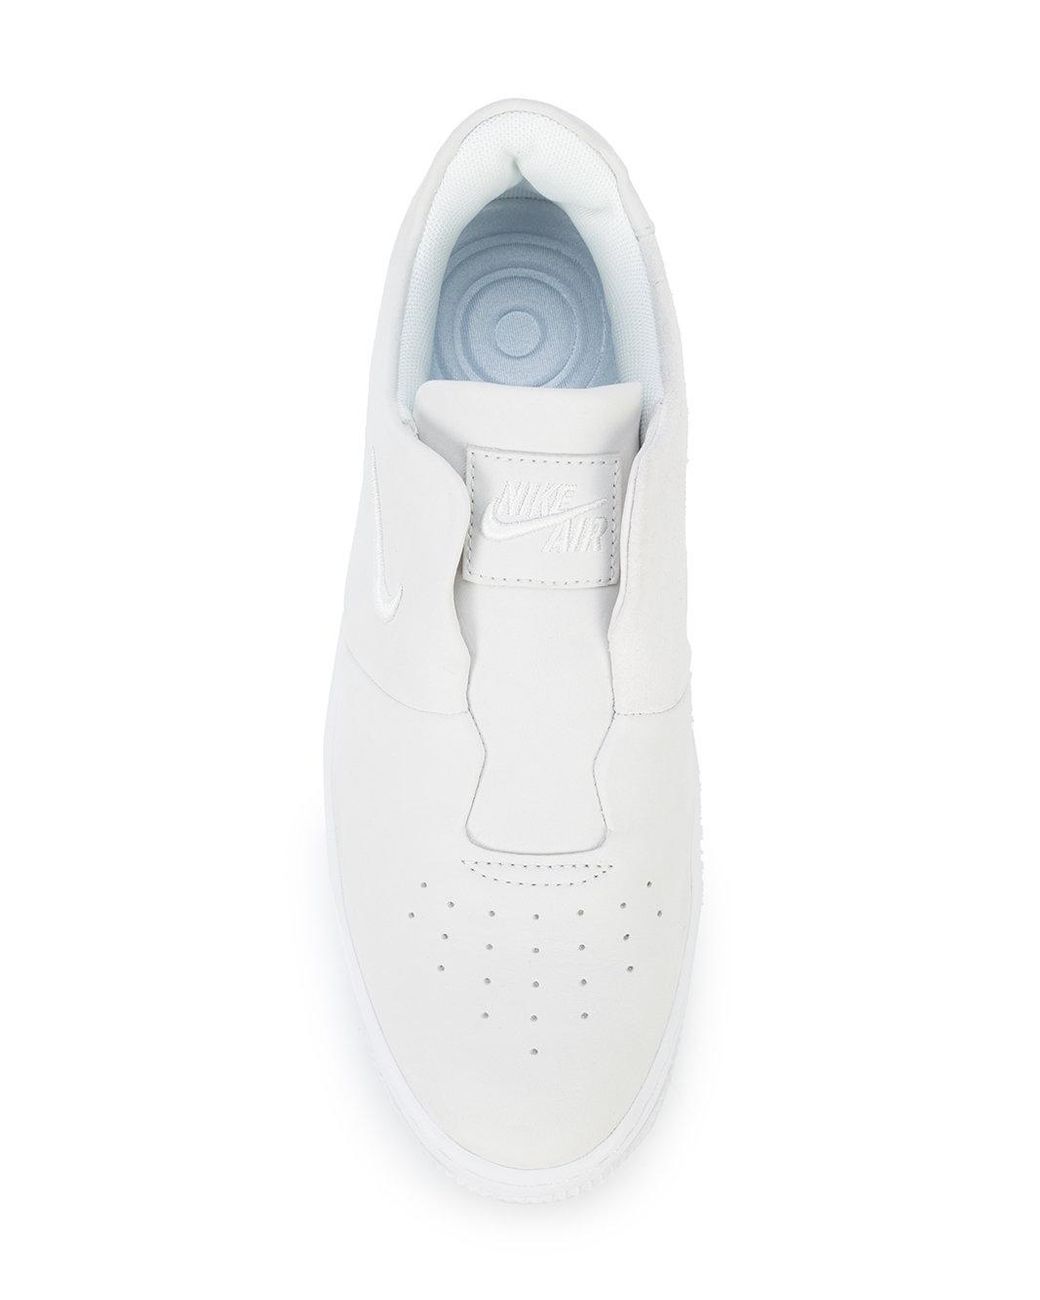 Nike AD Comfort Slip Women's Running Shoes